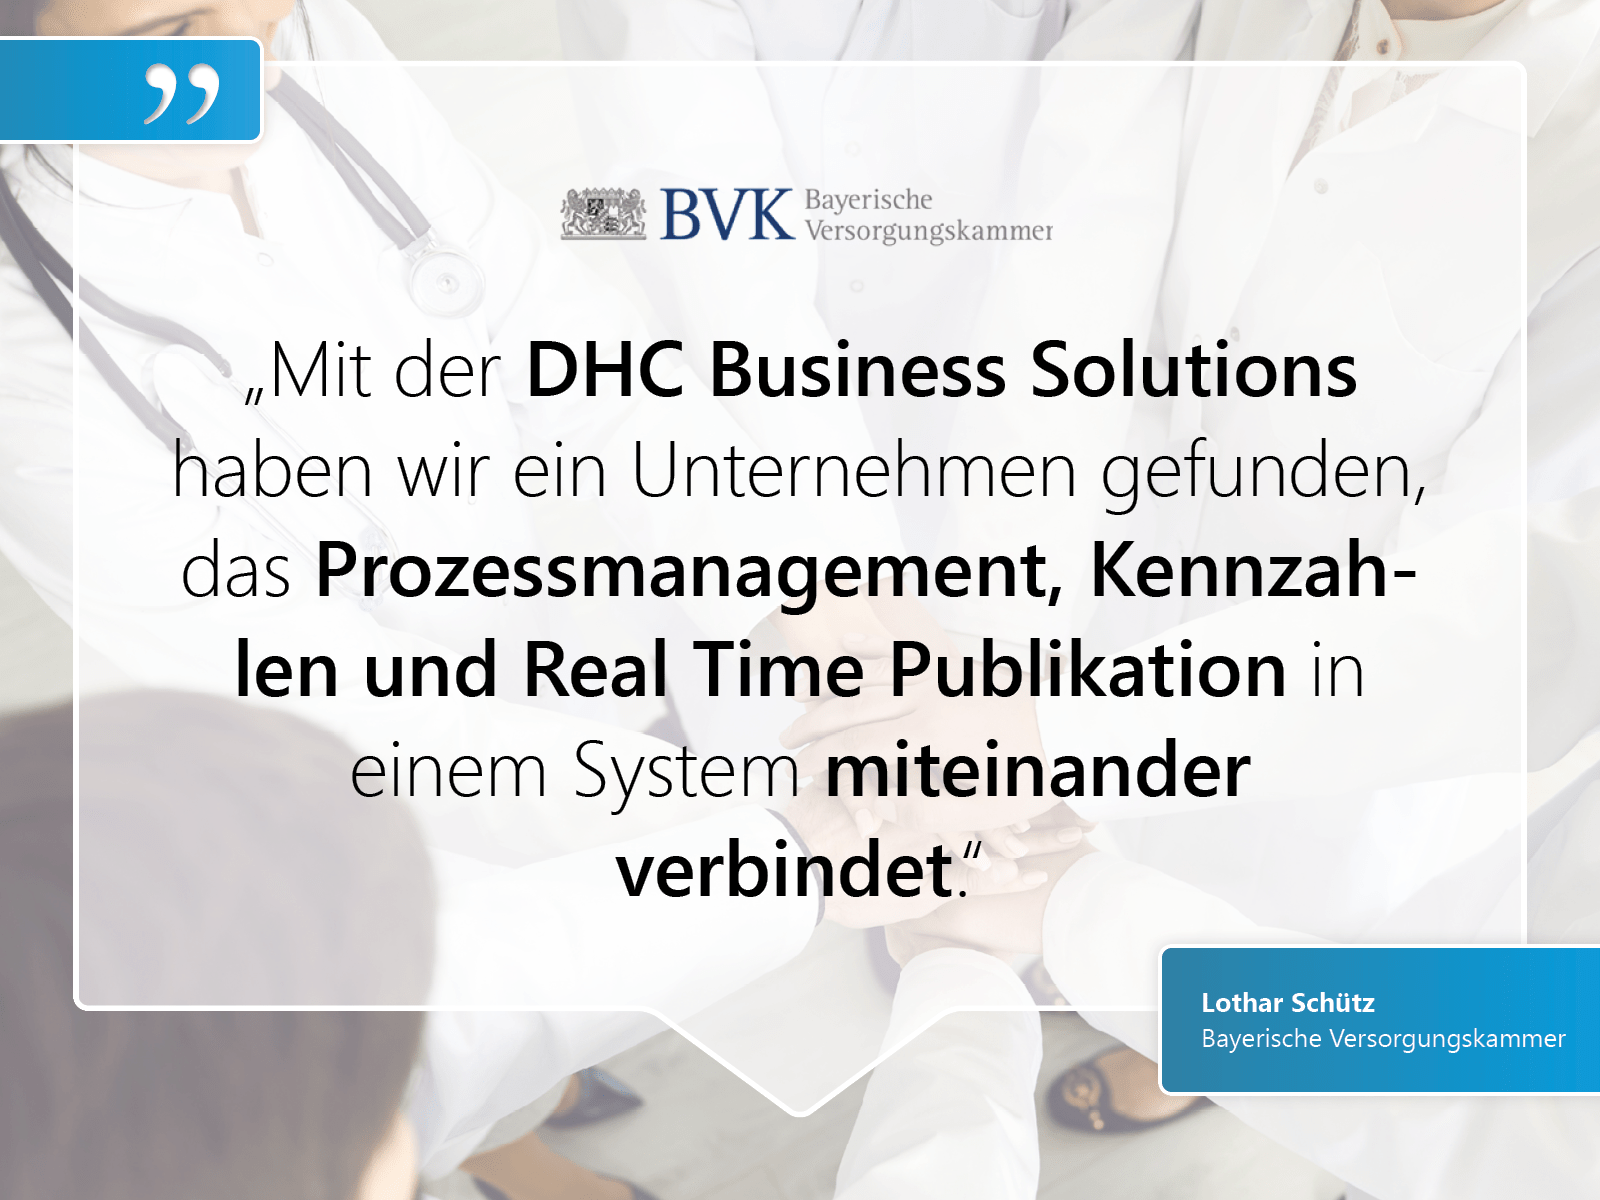 Bayerische Versorgungskammer: „Mit der DHC Business Solutions  haben wir ein Unternehmen gefunden, das Prozessmanagement, Kennzahlen und Real Time Publikation in  einem System miteinander  verbindet.“